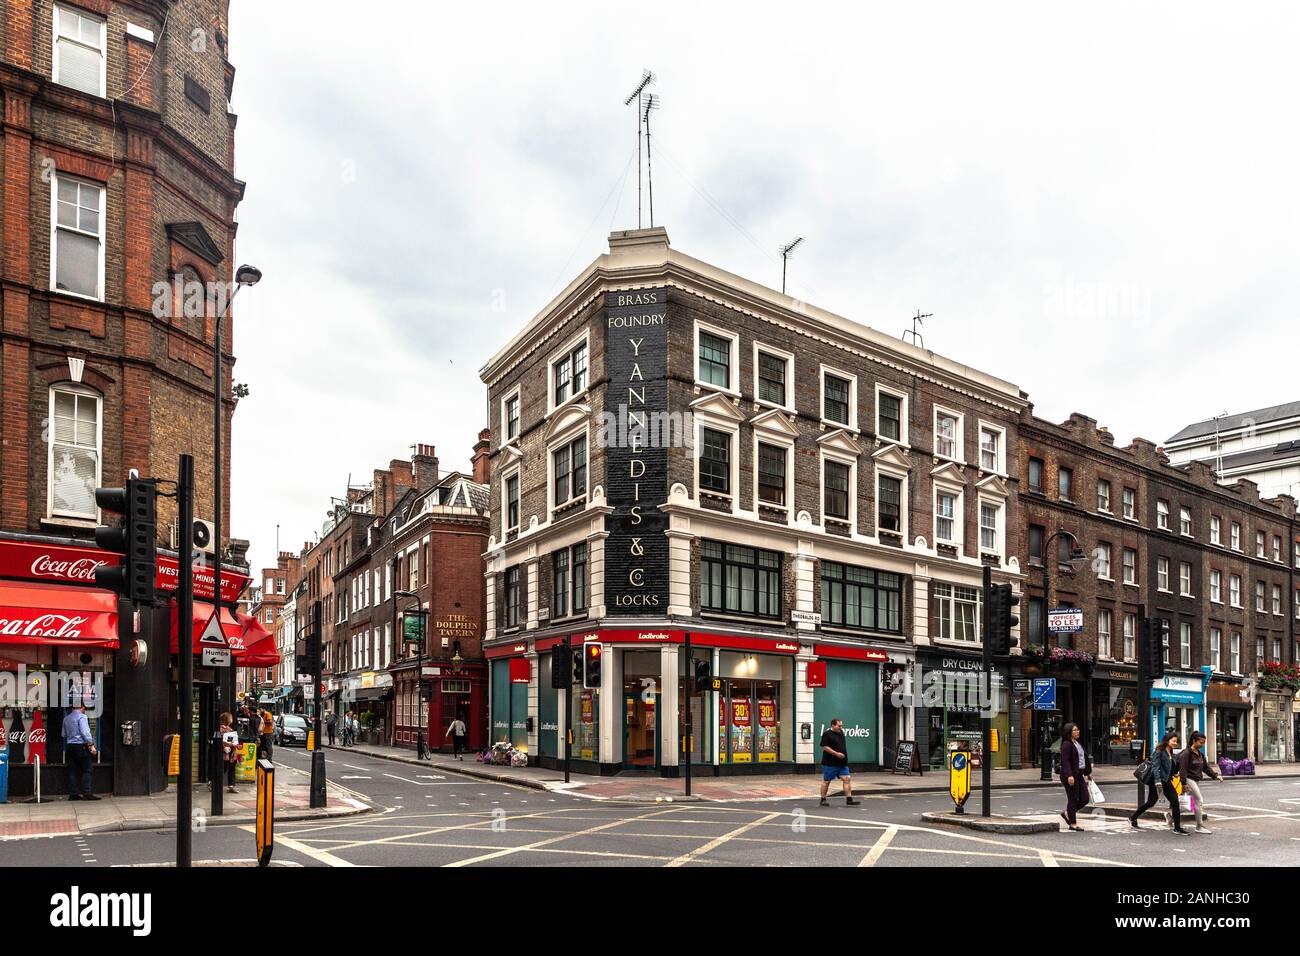 Shopfronts on Theobalds street, London, England, UK. Stock Photo